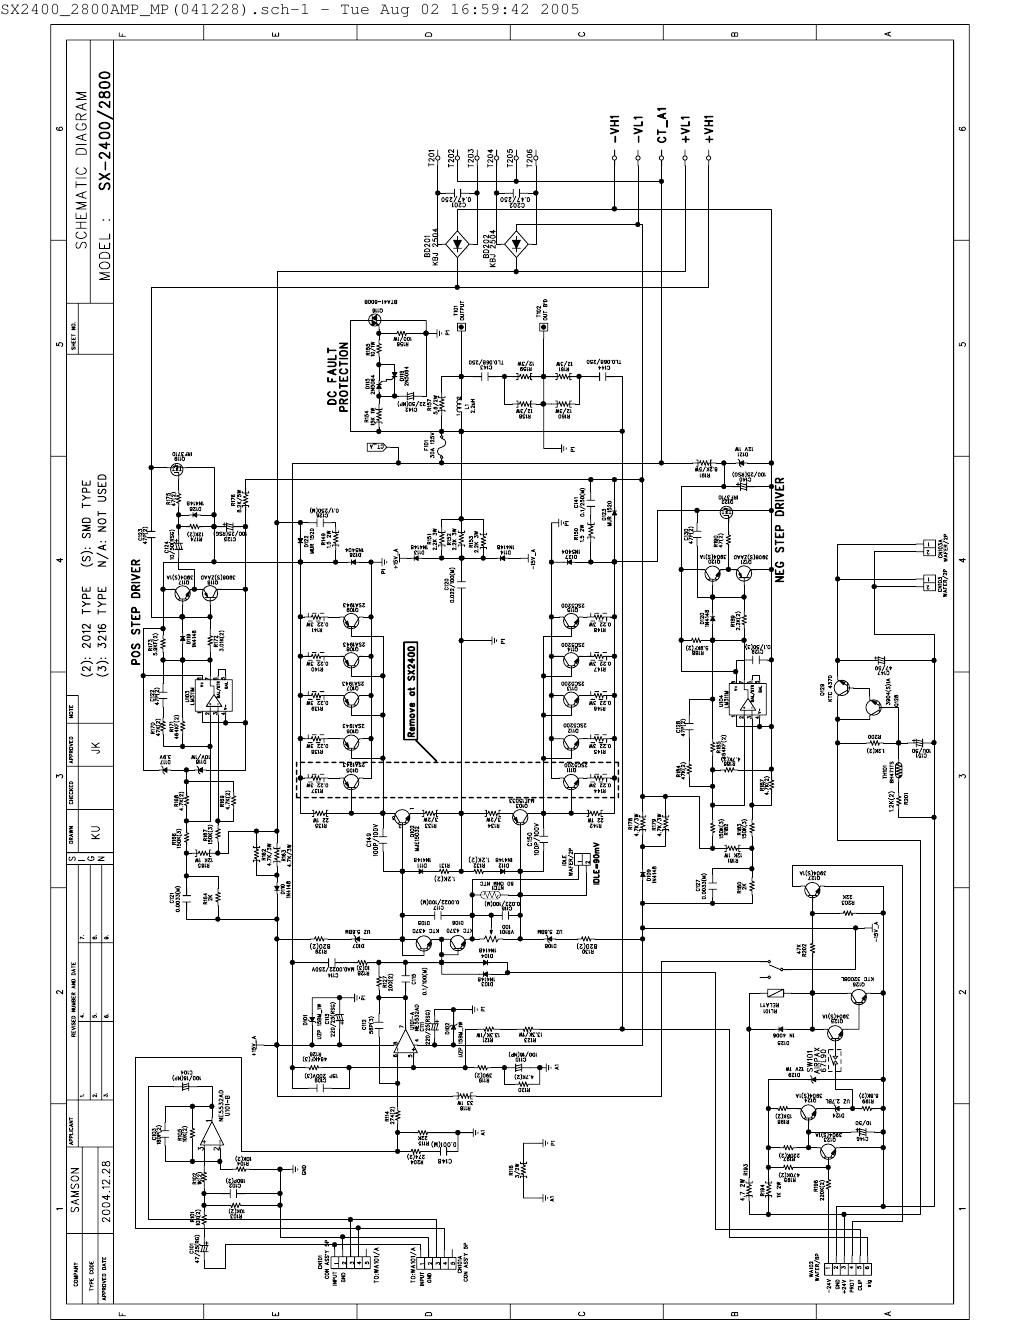 Samson SX2400 SX2800 Power Amp schematics